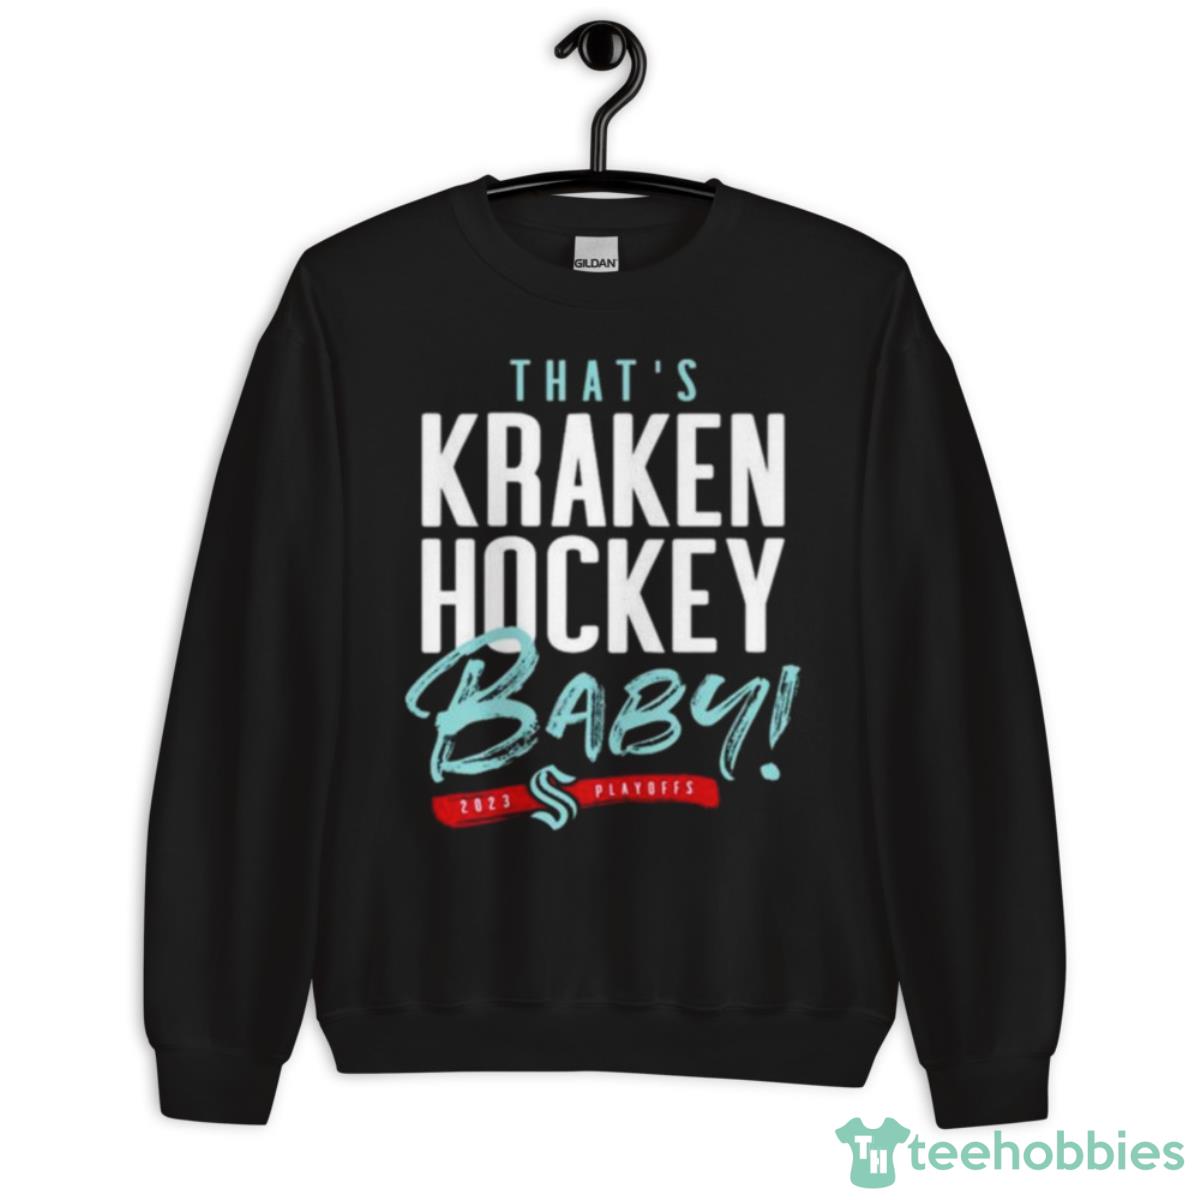 https://image.teehobbies.us/2023-05/seattle-kraken-thats-kraken-hockey-baby-2023-playoff-shirt-2.jpeg